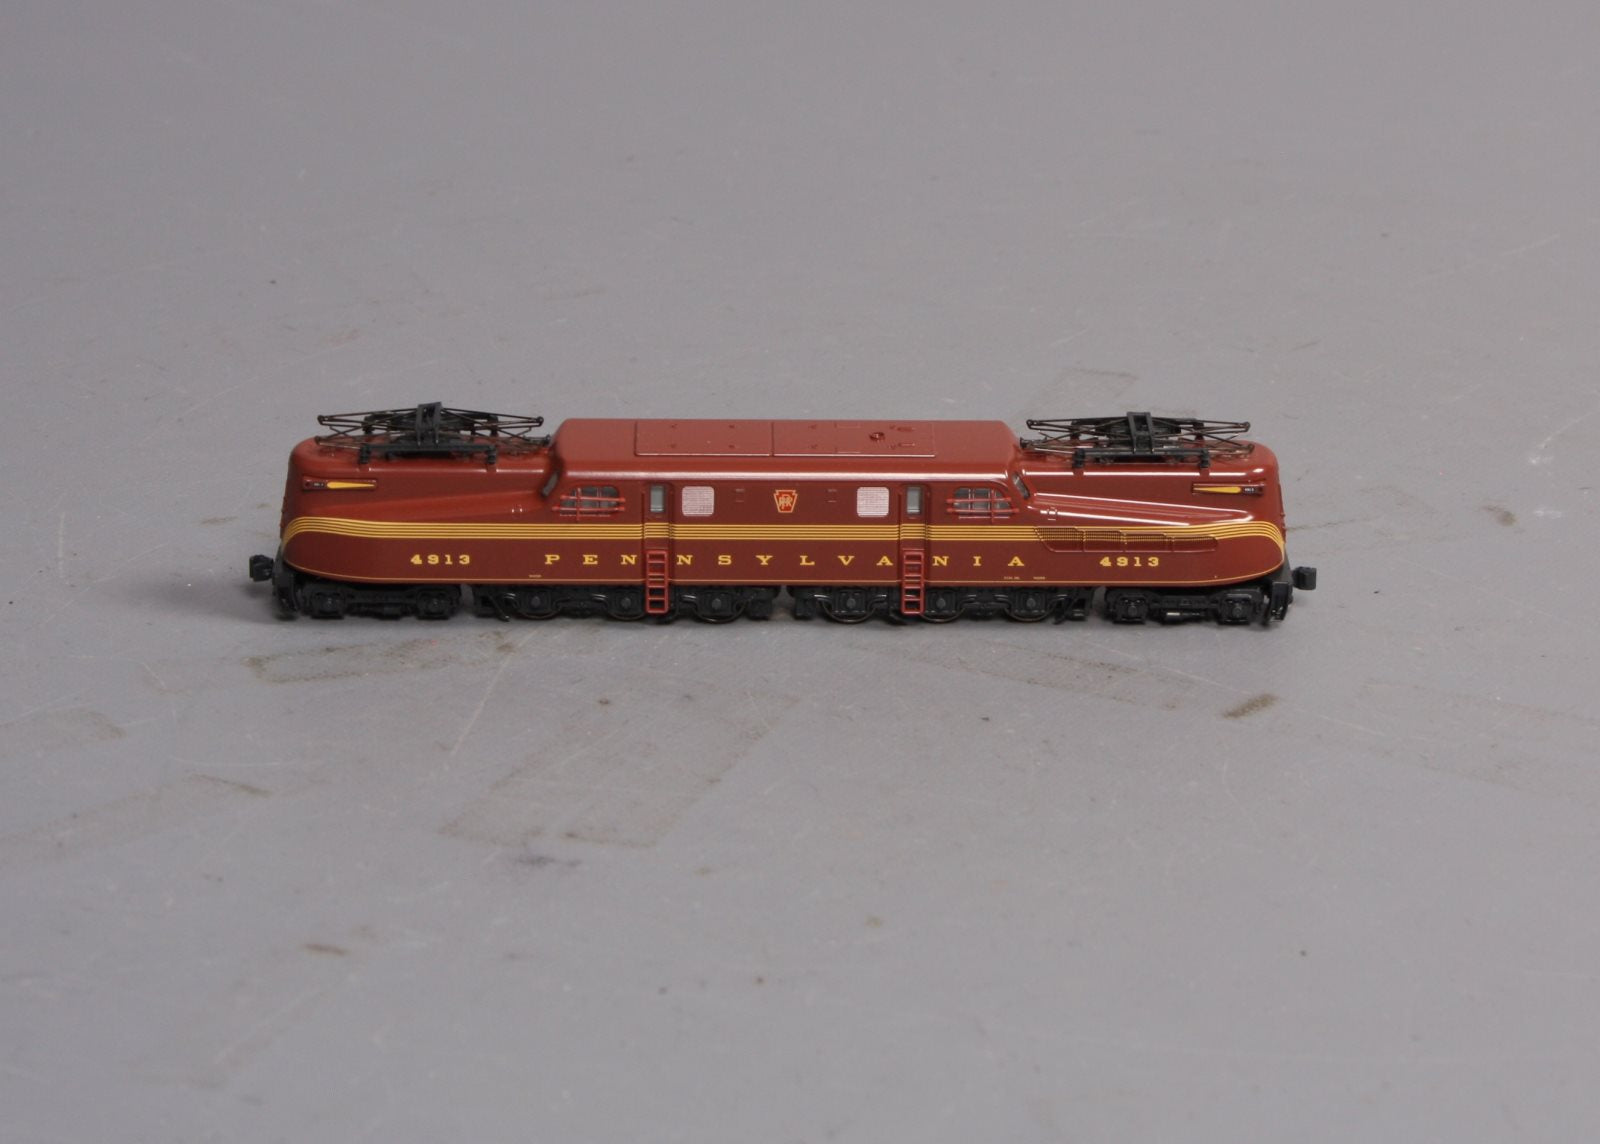 通販最新作未使用　KATO 137-2001 GG1 Pennsylvania 4935 鉄道模型